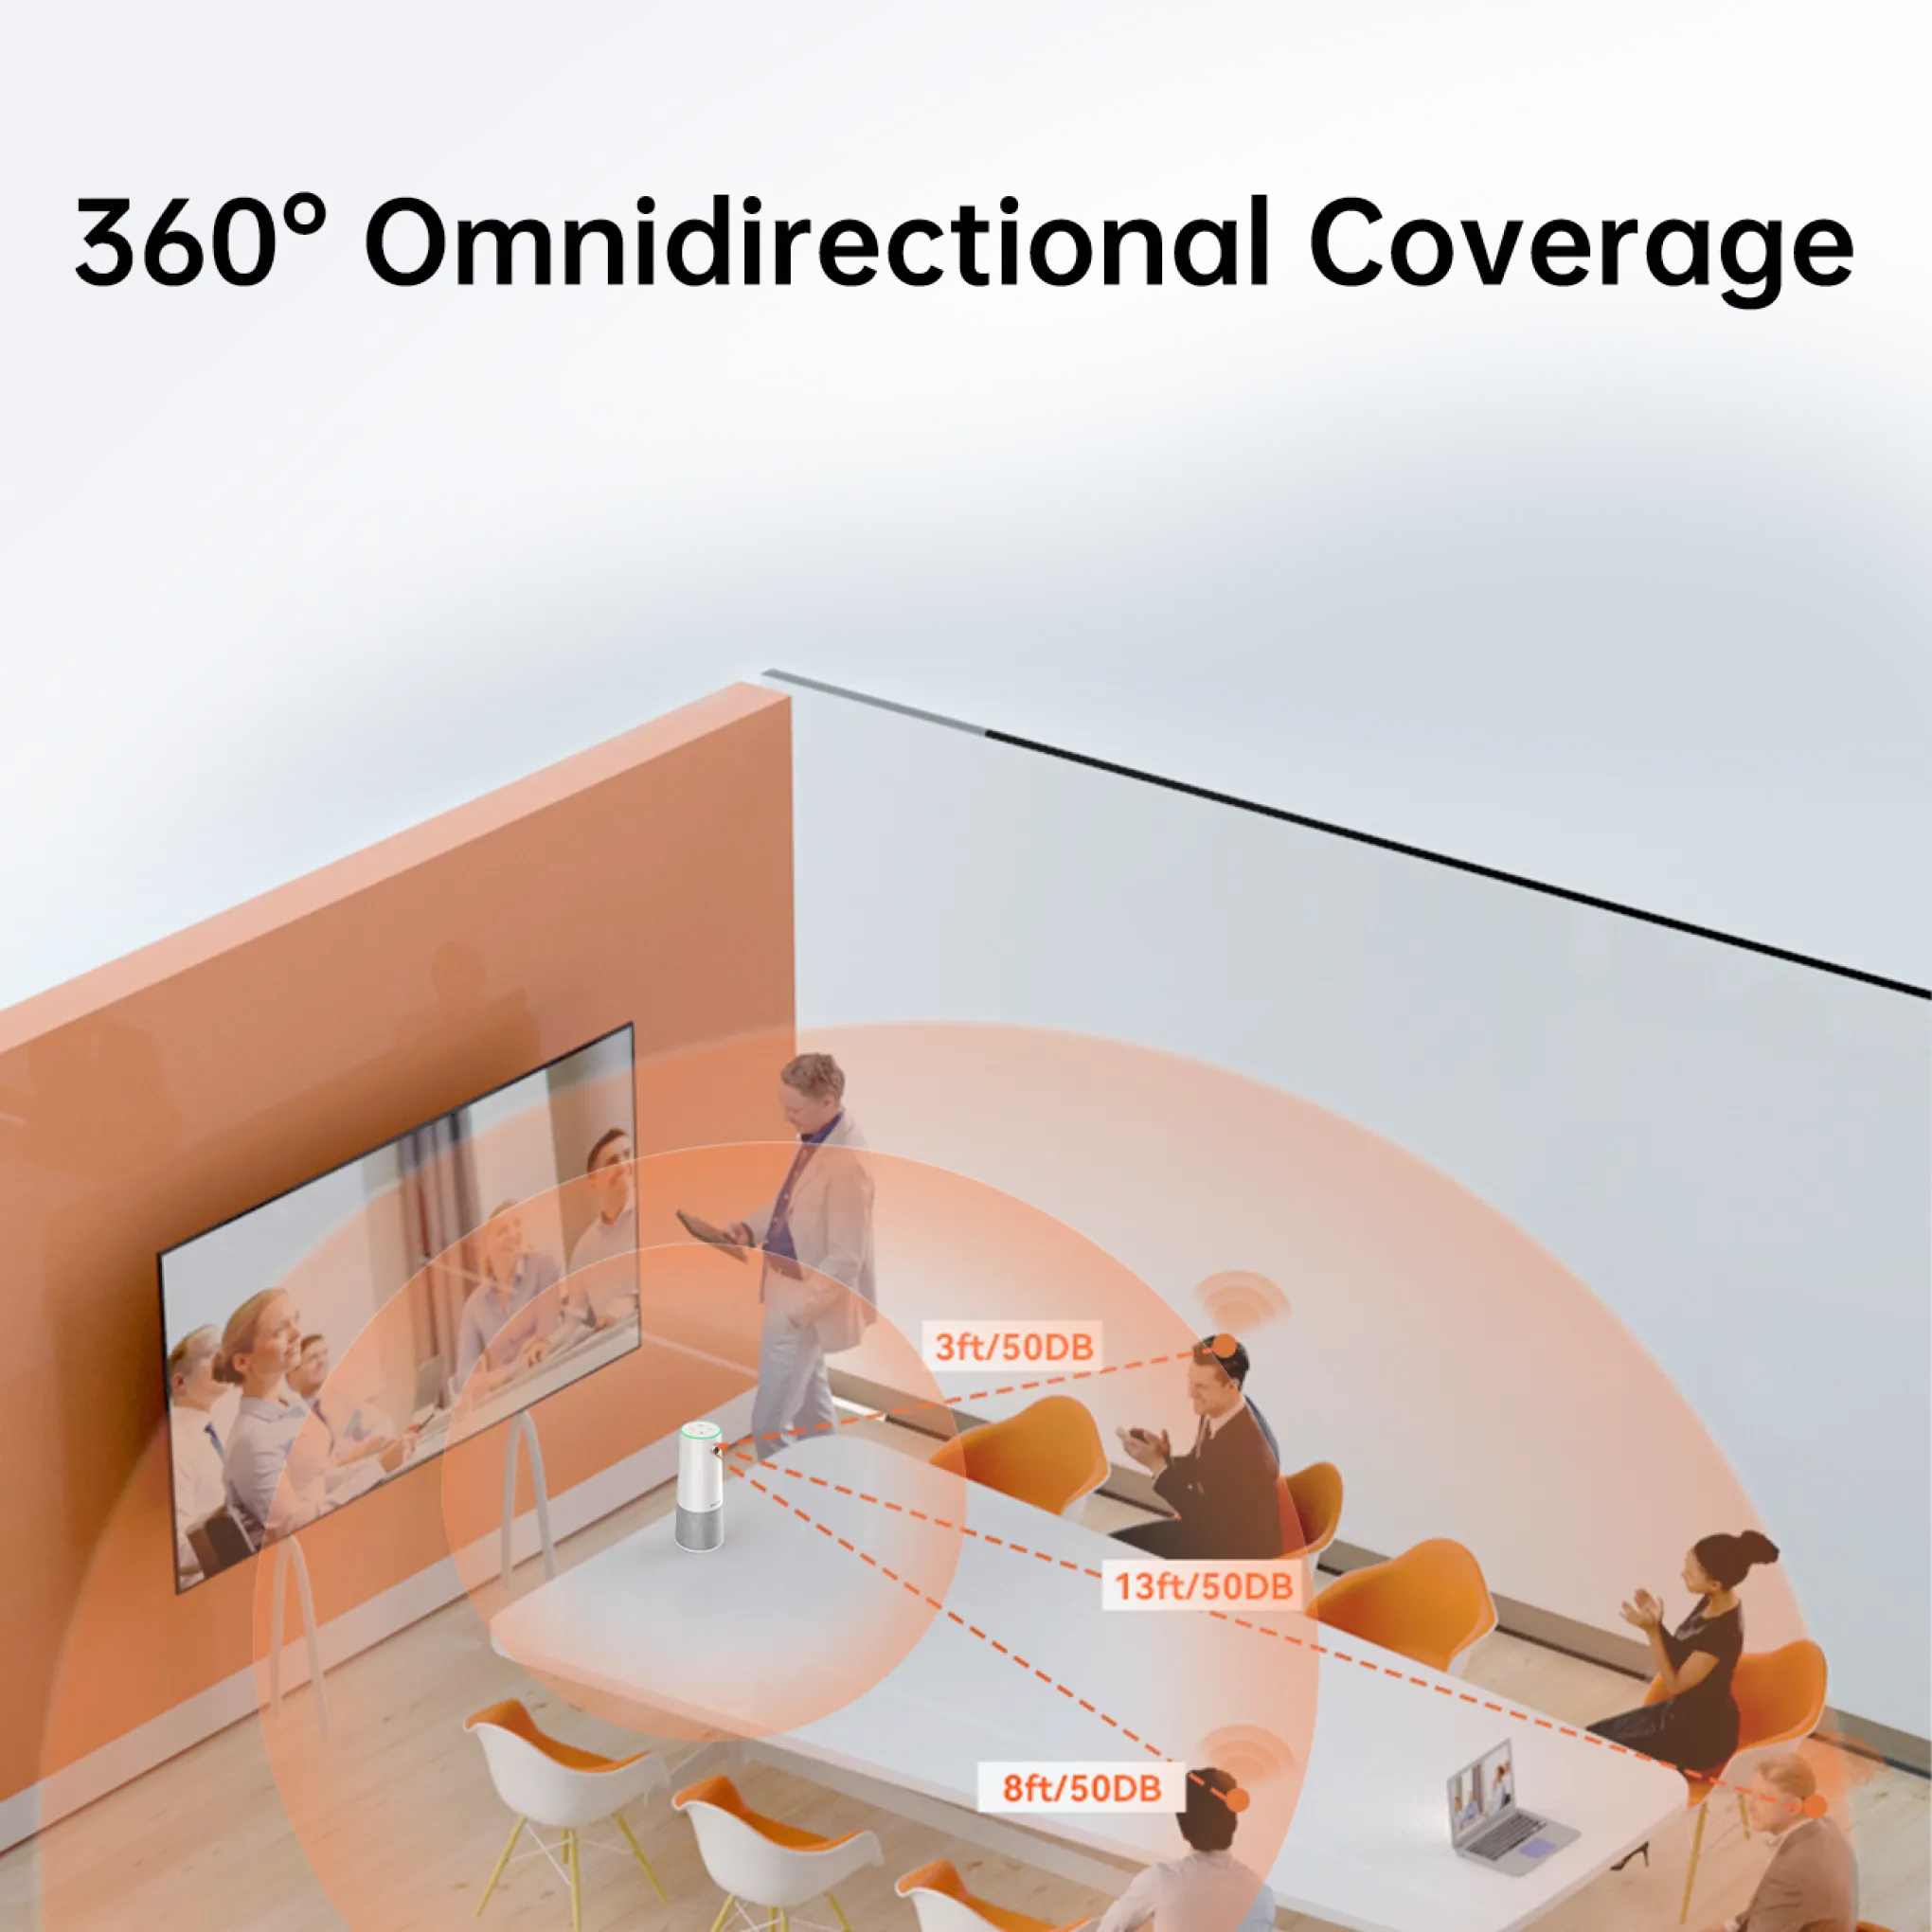 360° omnidirectional coverage